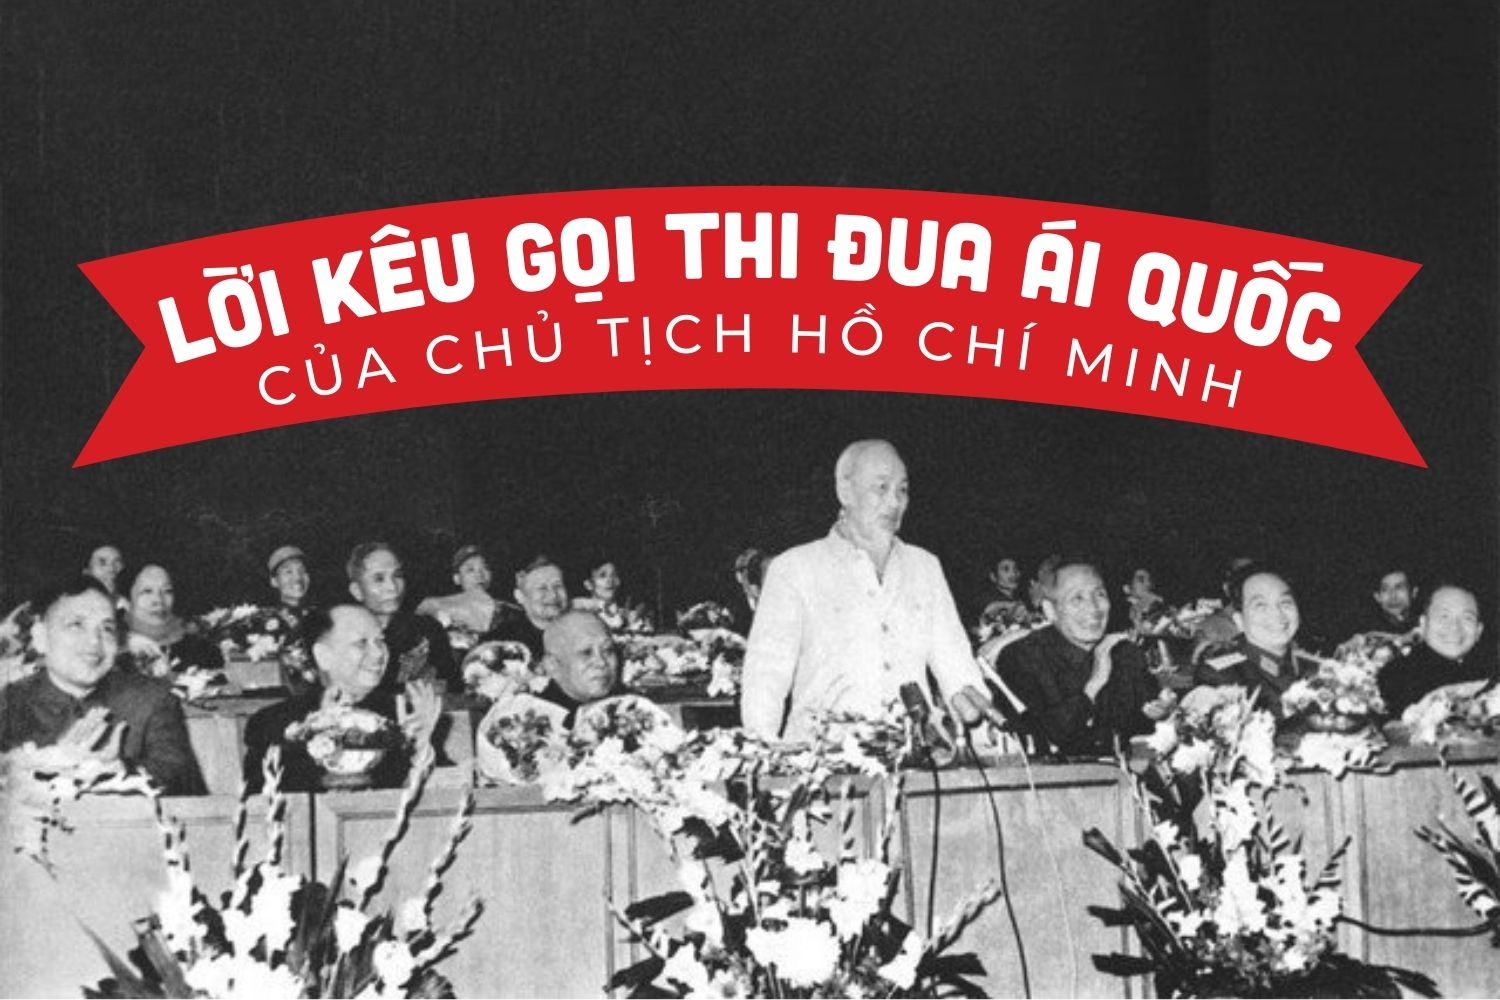 75 năm ngày Chủ tịch Hồ Chí Minh ra Lời kêu gọi thi đua ái quốc (11/6/1948 - 11/6/2023)